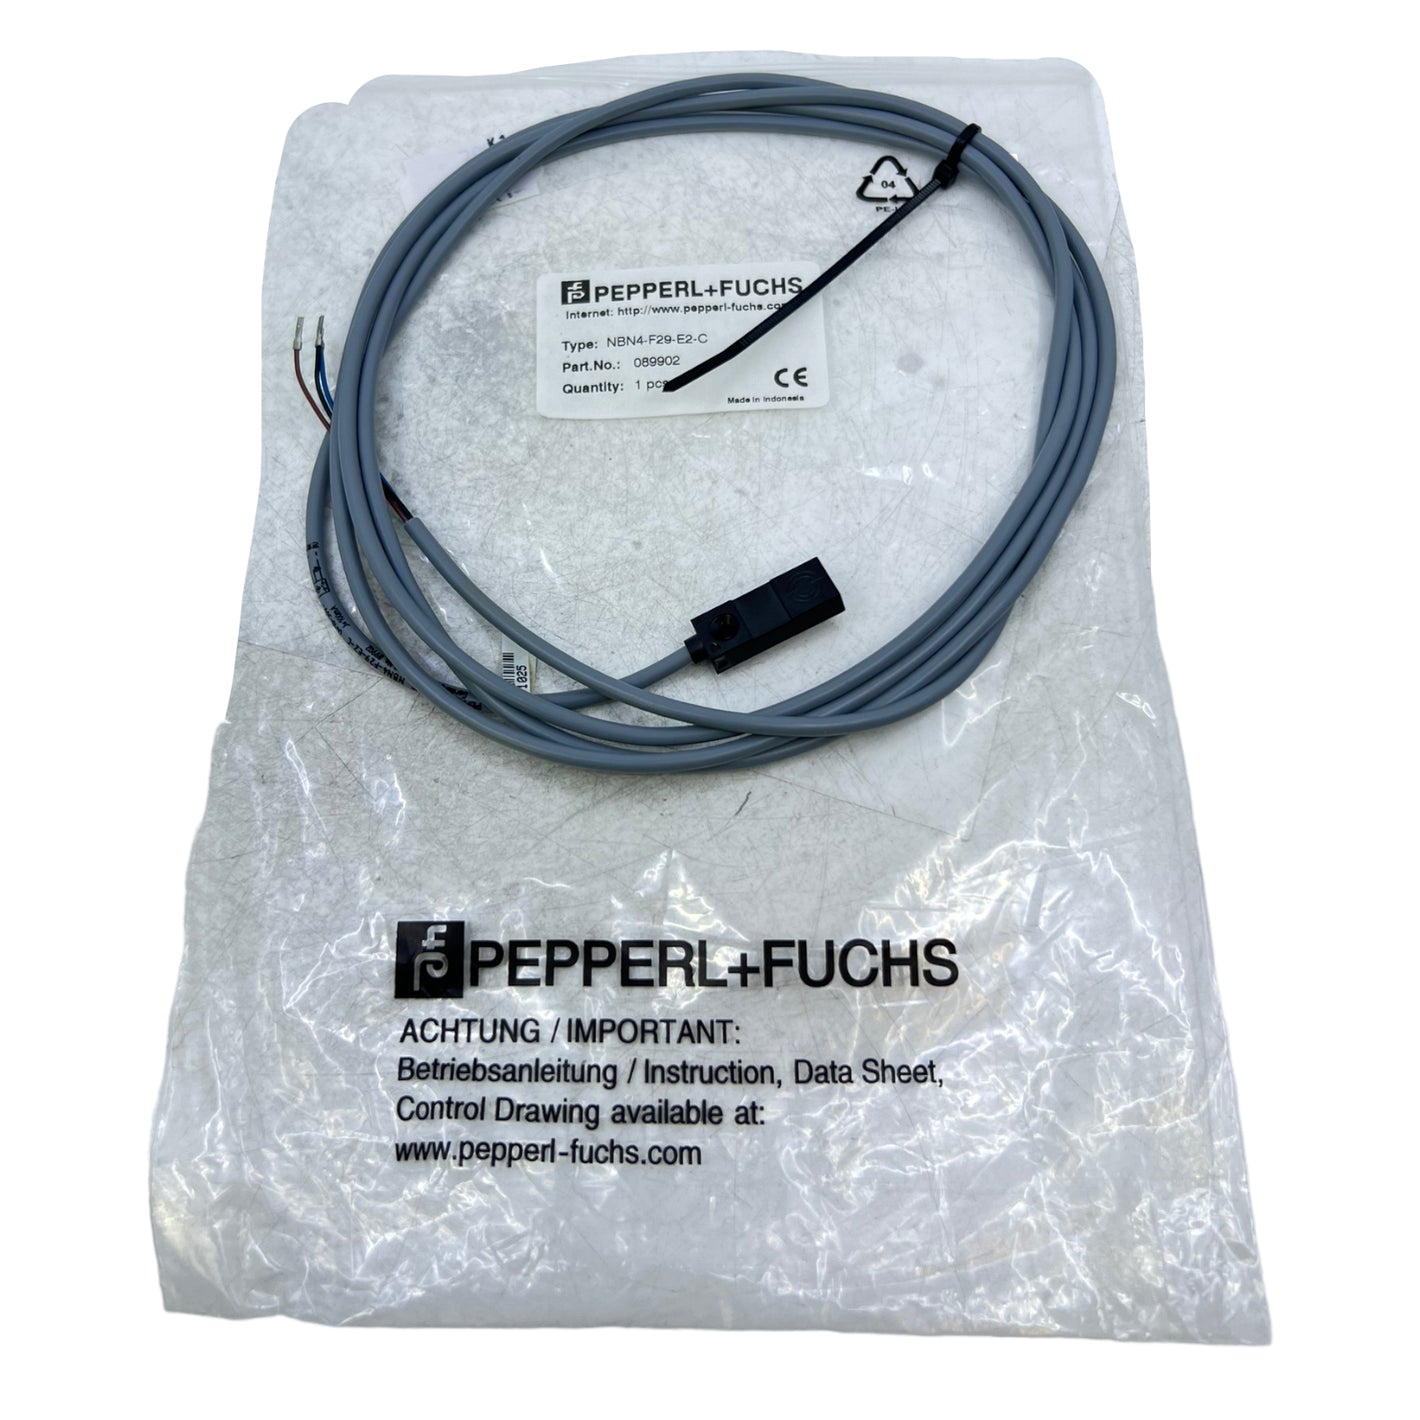 Pepperl+Fuchs NBN4-F29-E2-C Induktiver Sensor 089902 4,75...30V DC PNP